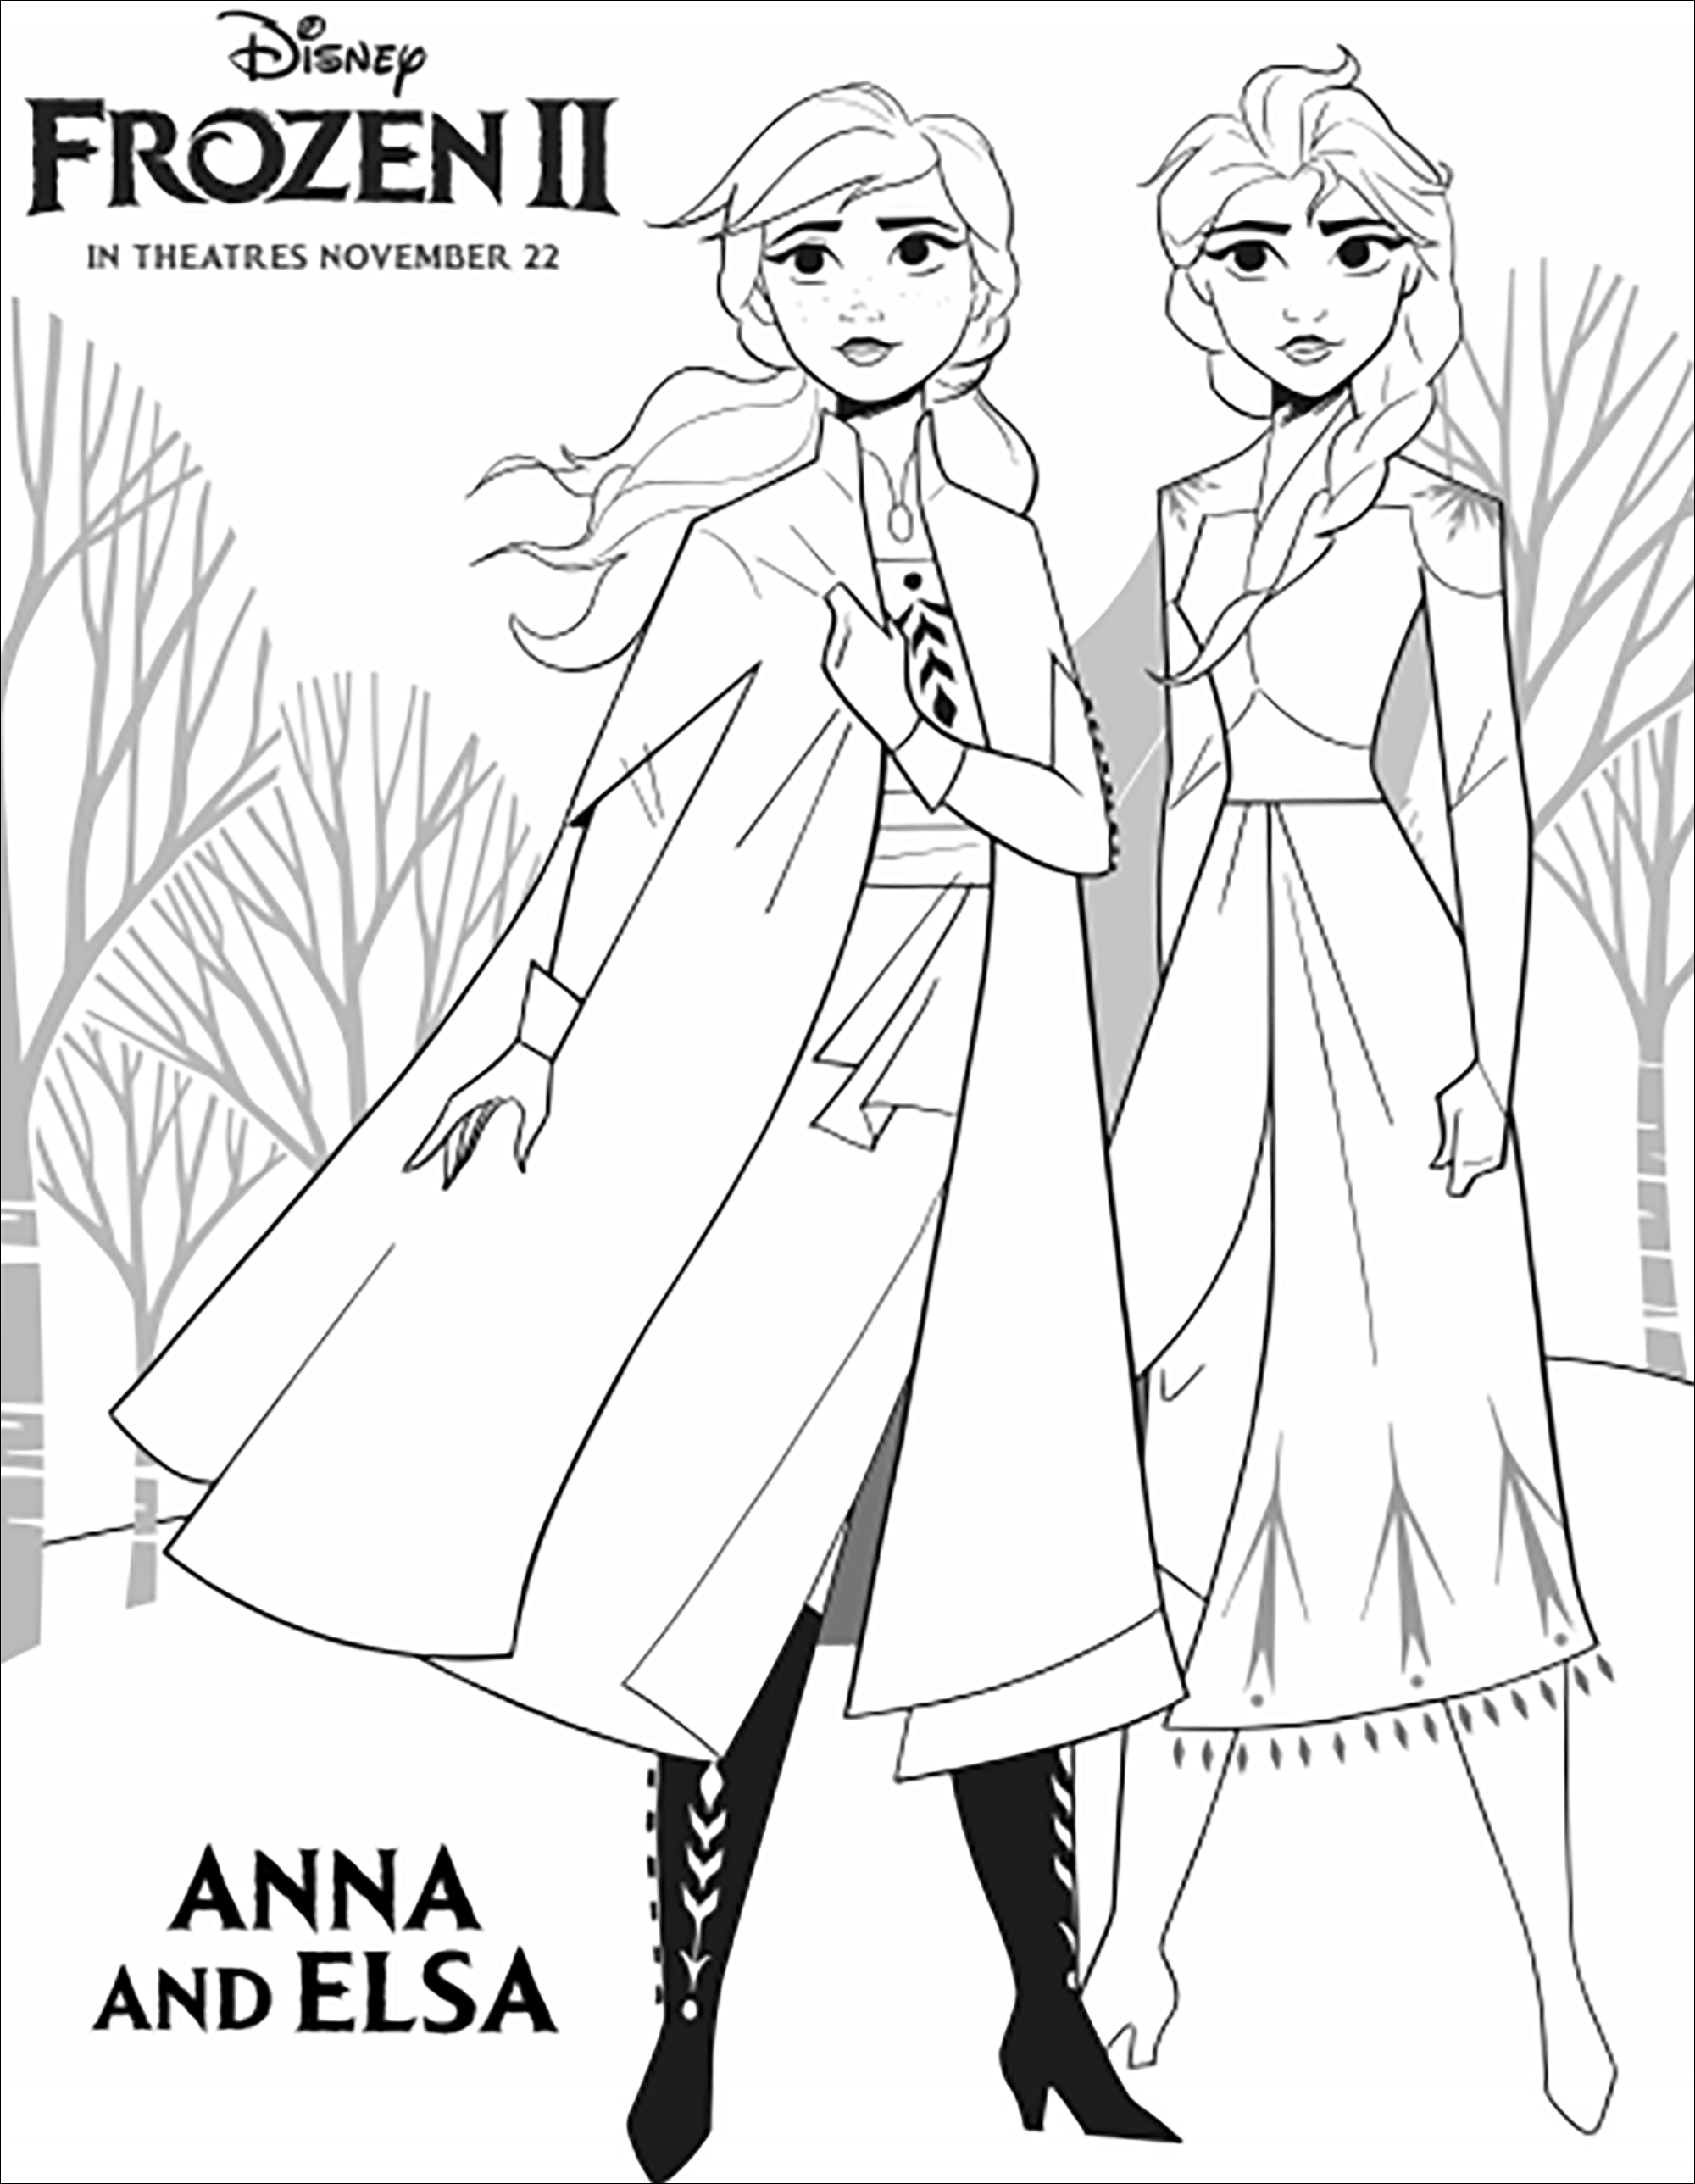 Elsa et Anna, plus soudées que jamais, dans La reine des neiges 2 (Disney) : (version avec texte)